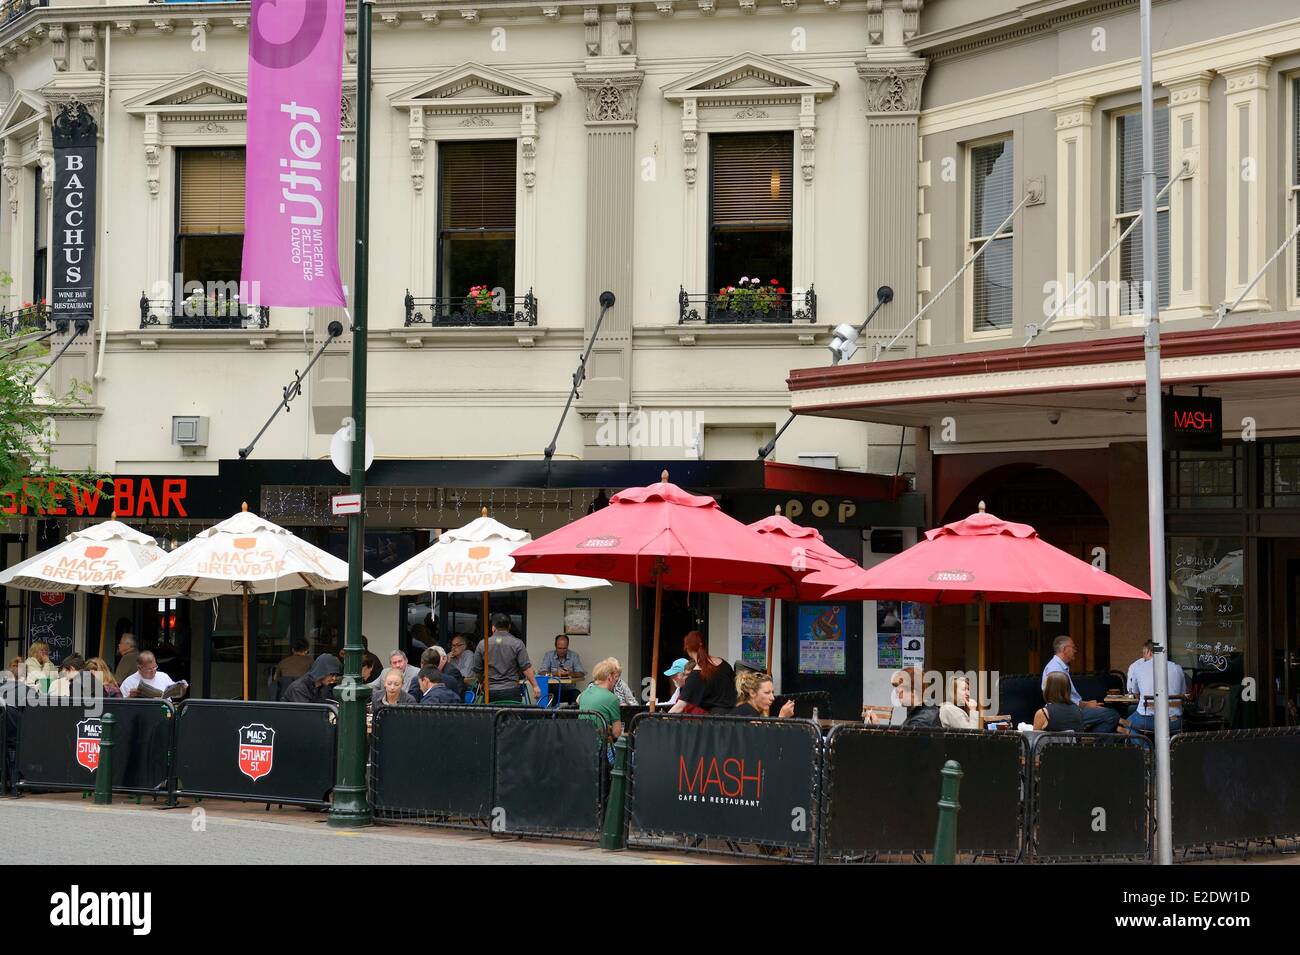 Nouvelle Zélande, île du Sud, région de l'Otago, Dunedin, sur la côte est, fondée en 1848 par des écossais, est surtout connue pour son port pittoresque, quartier animé de la population étudiante et du patrimoine écossais, l'octogone est le centre-ville de Dunedin entouré de bars, restaurants et boutiques Banque D'Images